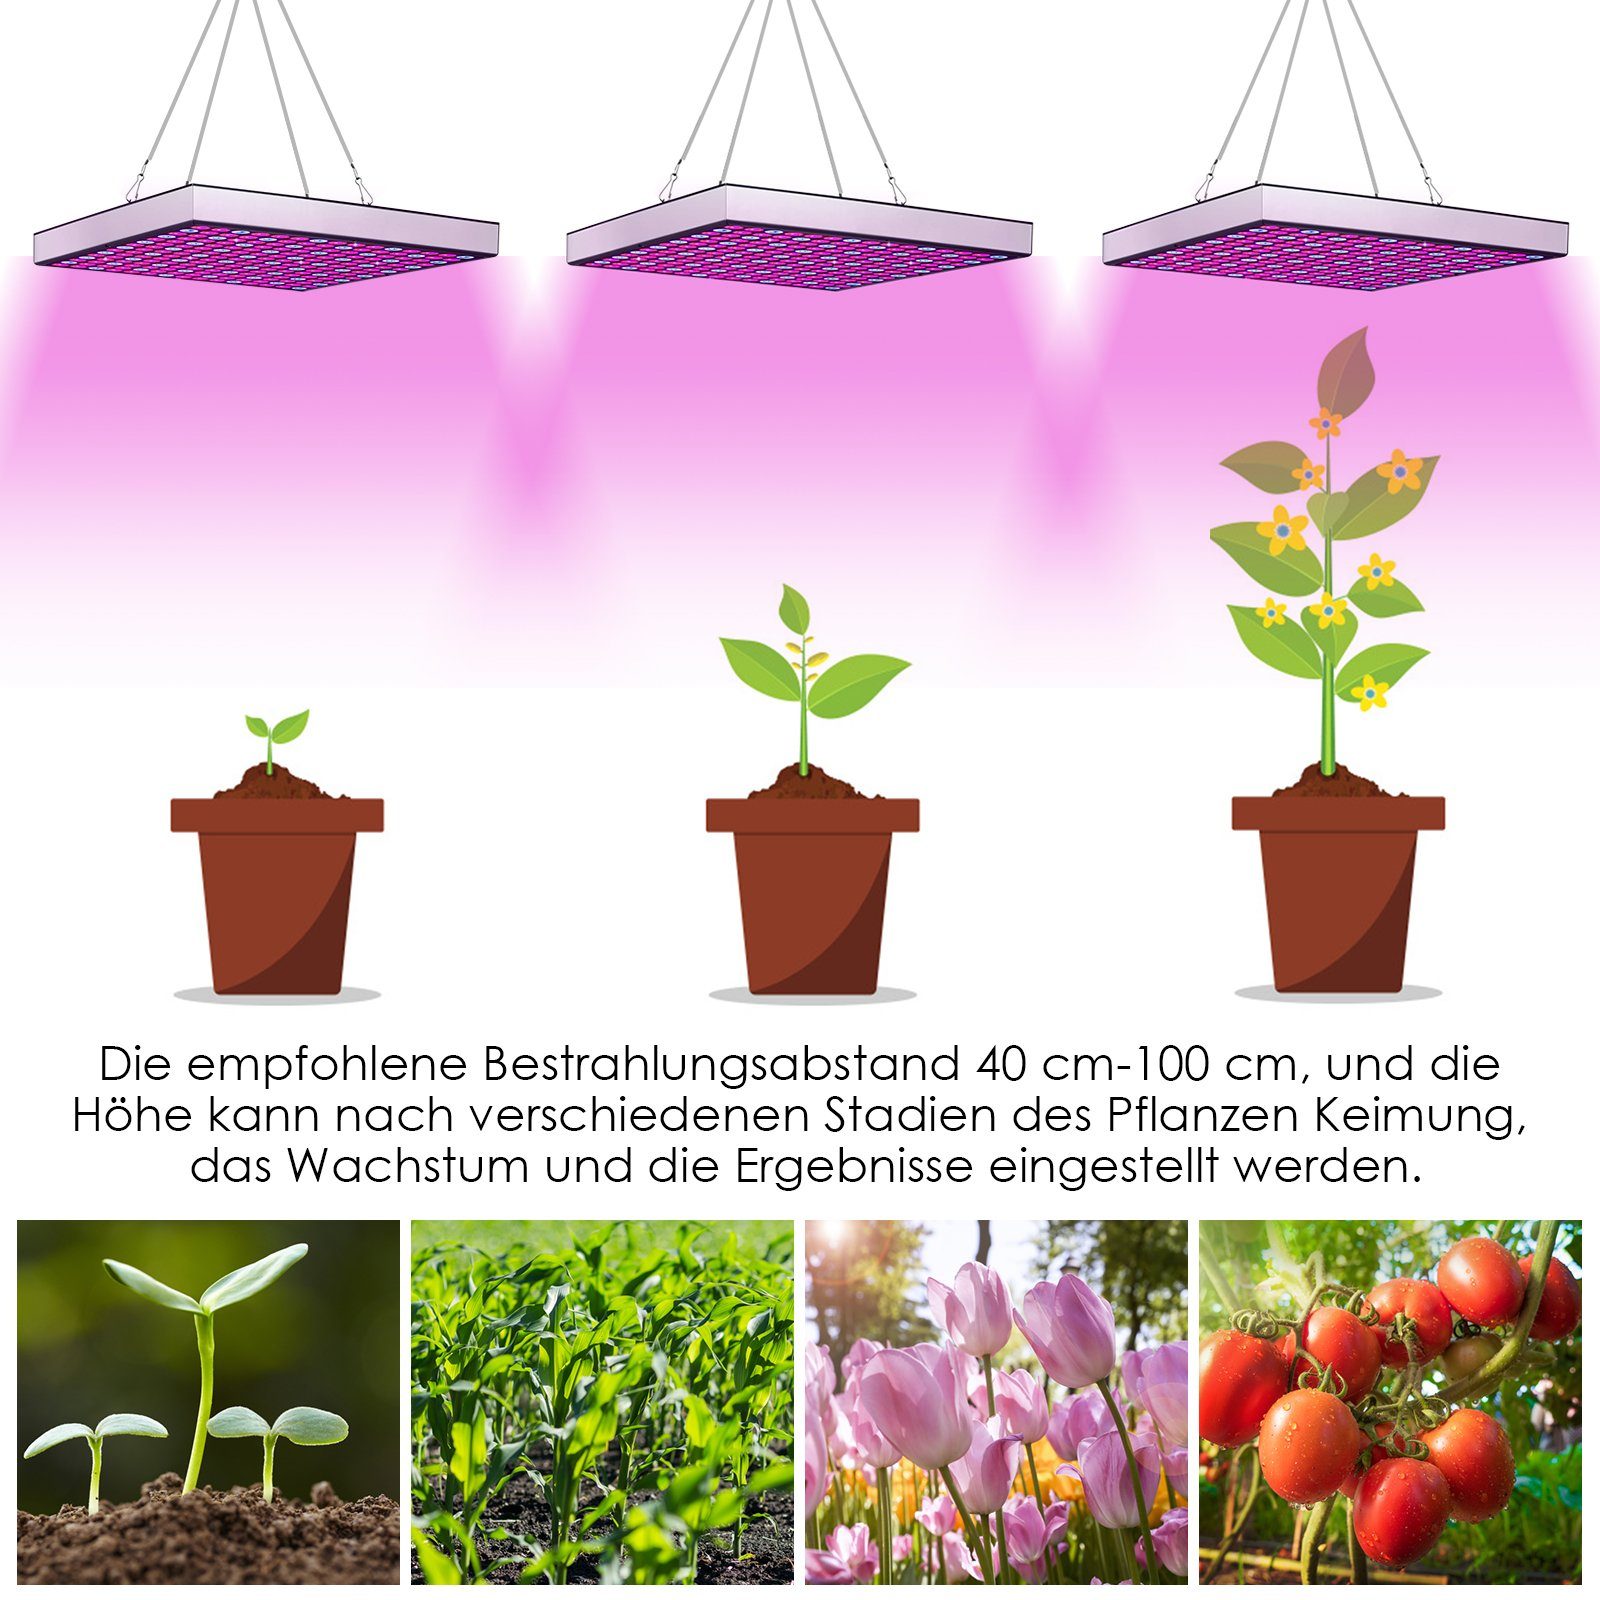 Zimmerpflanzen Wachstumslicht LED Sukkulenten Vollspektrum, für Gewächshaus 15W Pflanzenlampe Blumen Lospitch